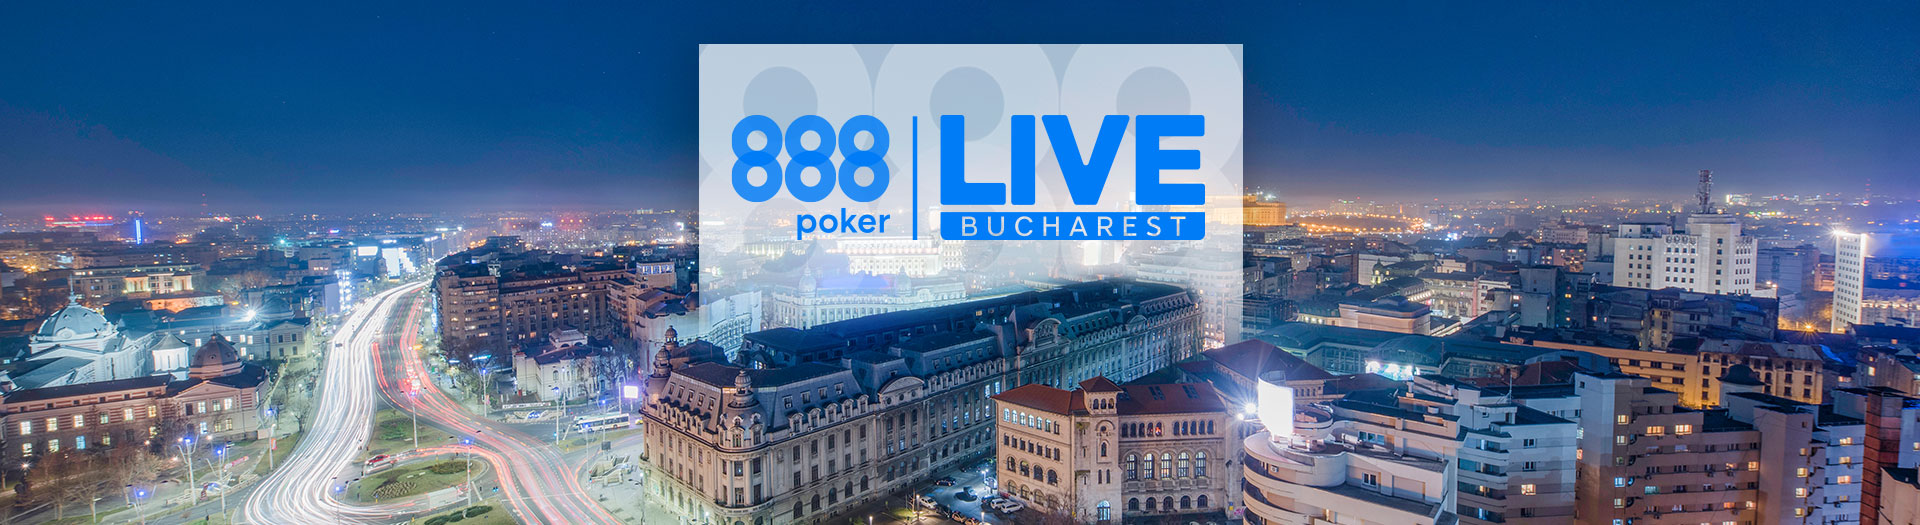 Live-Bucharest-LP-image-1686561106289_tcm1987-590031